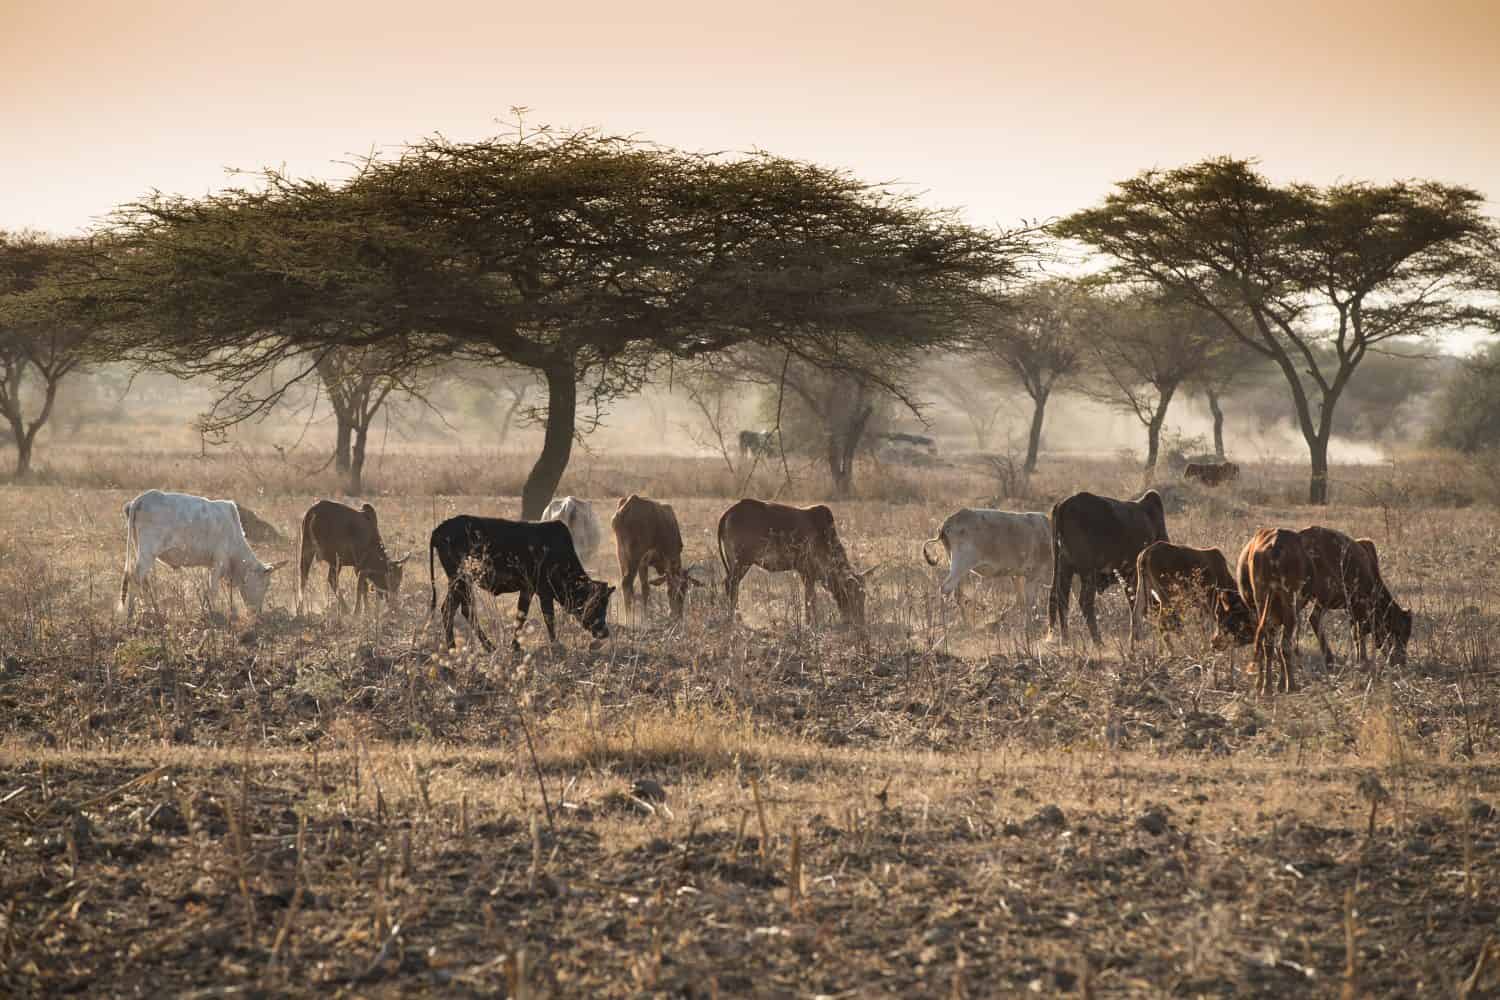 Herd of cows in the Ethiopian misty dusty landscape